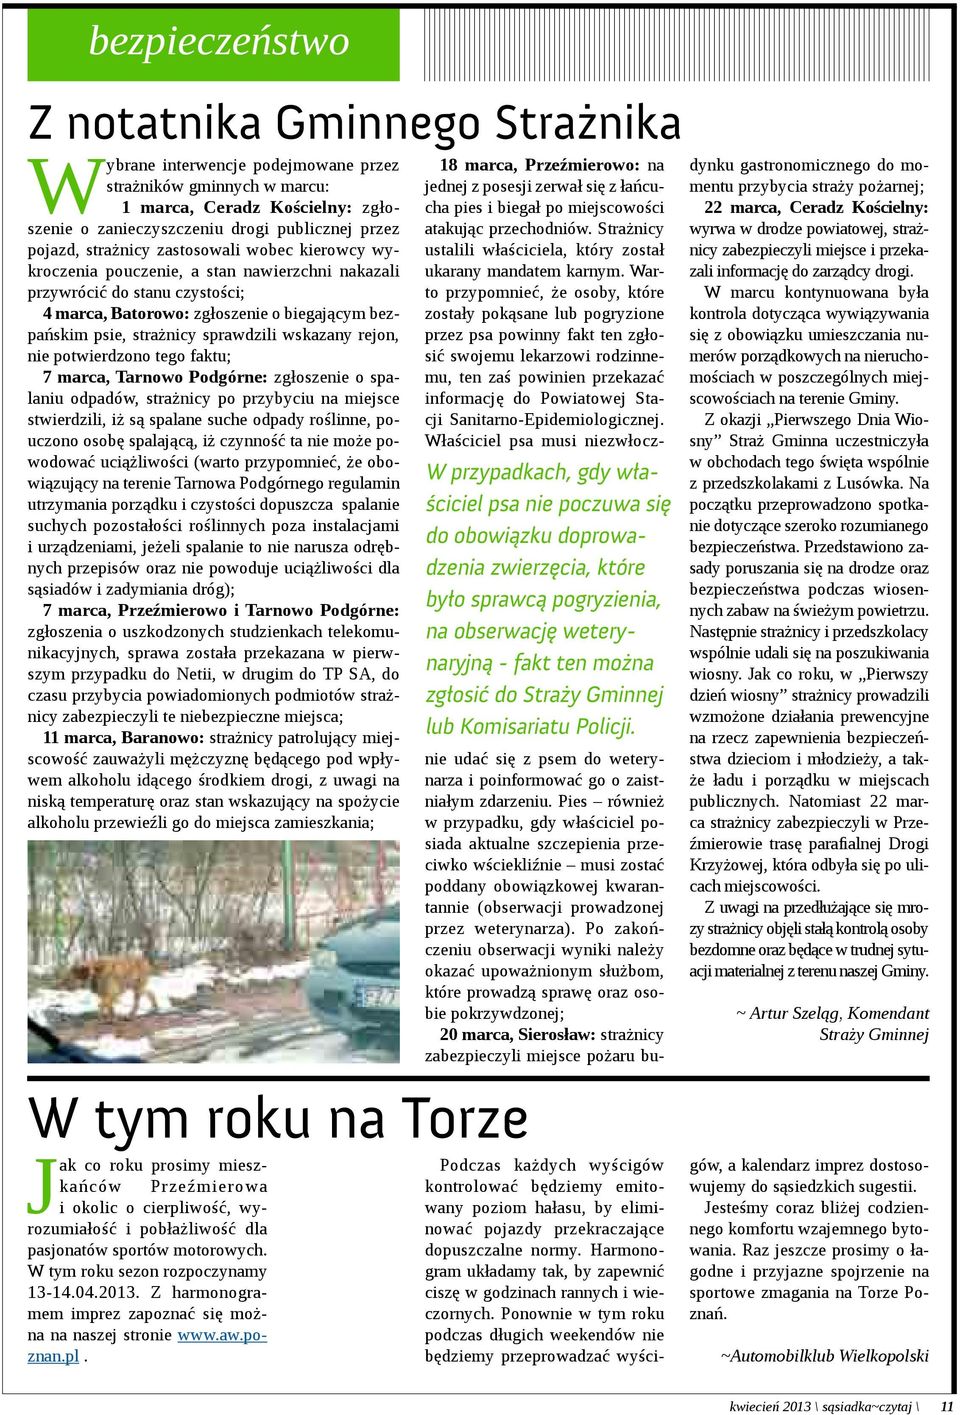 sprawdzili wskazany rejon, nie potwierdzono tego faktu; 7 marca, Tarnowo Podgórne: zgłoszenie o spalaniu odpadów, strażnicy po przybyciu na miejsce stwierdzili, iż są spalane suche odpady roślinne,